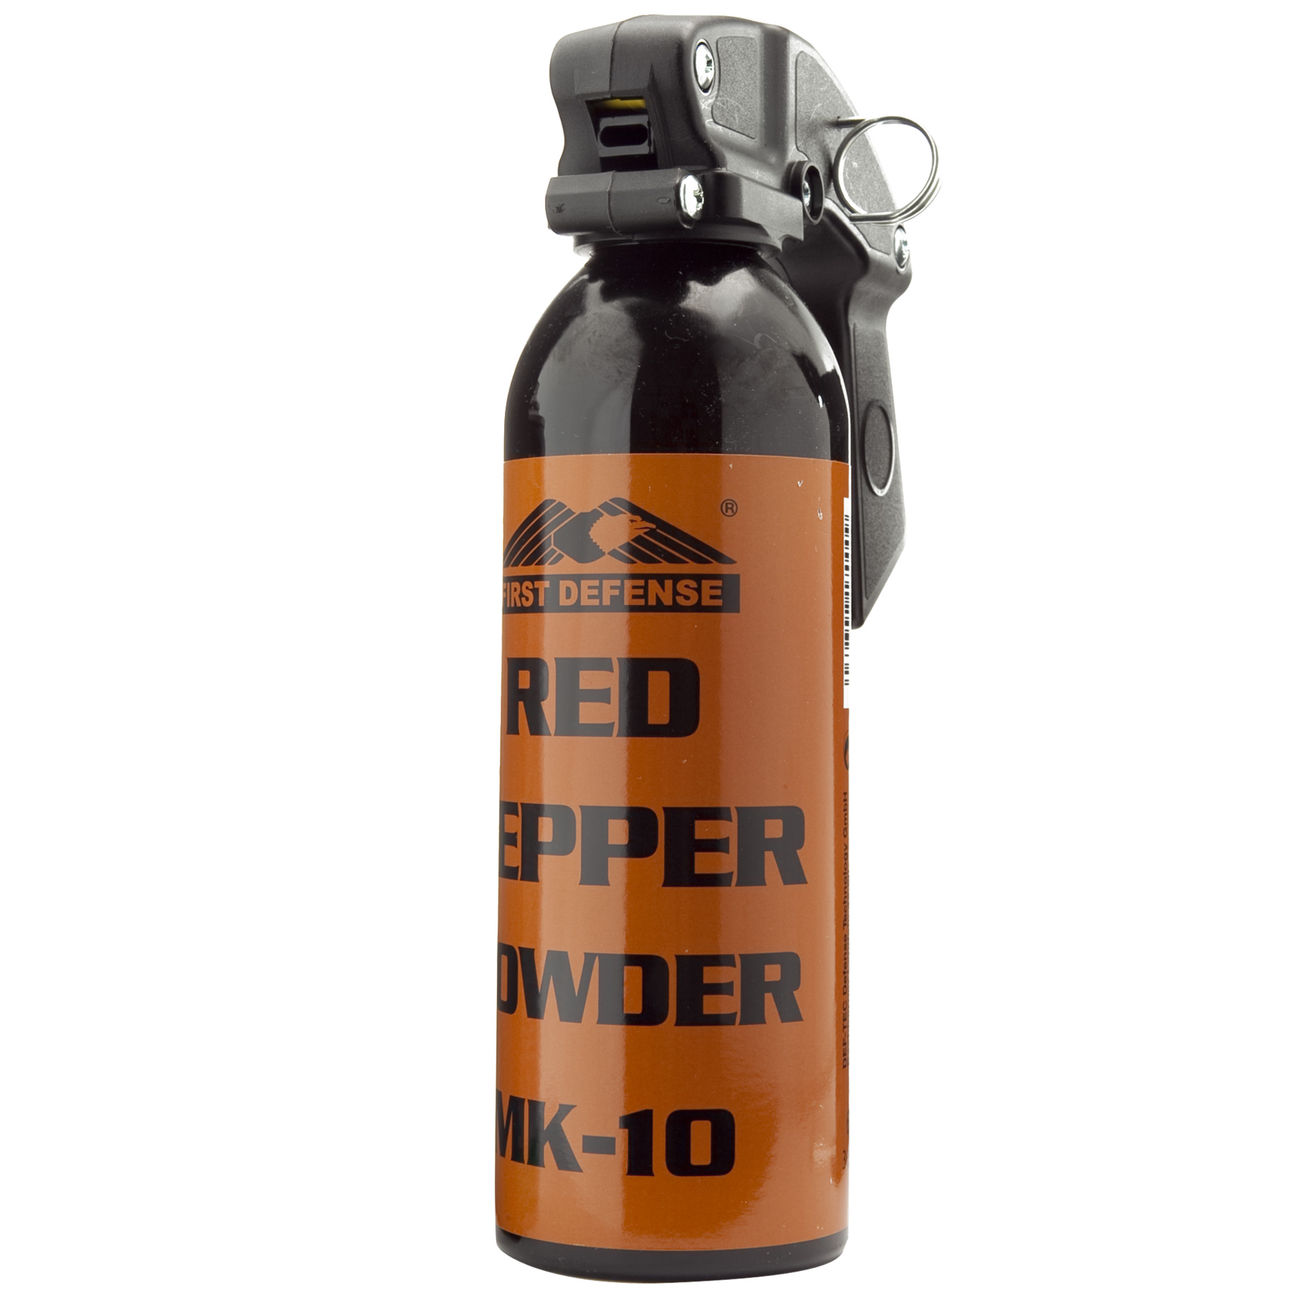 First Defense MK-10 Indoor Pfefferspray Pepper Powder 65g